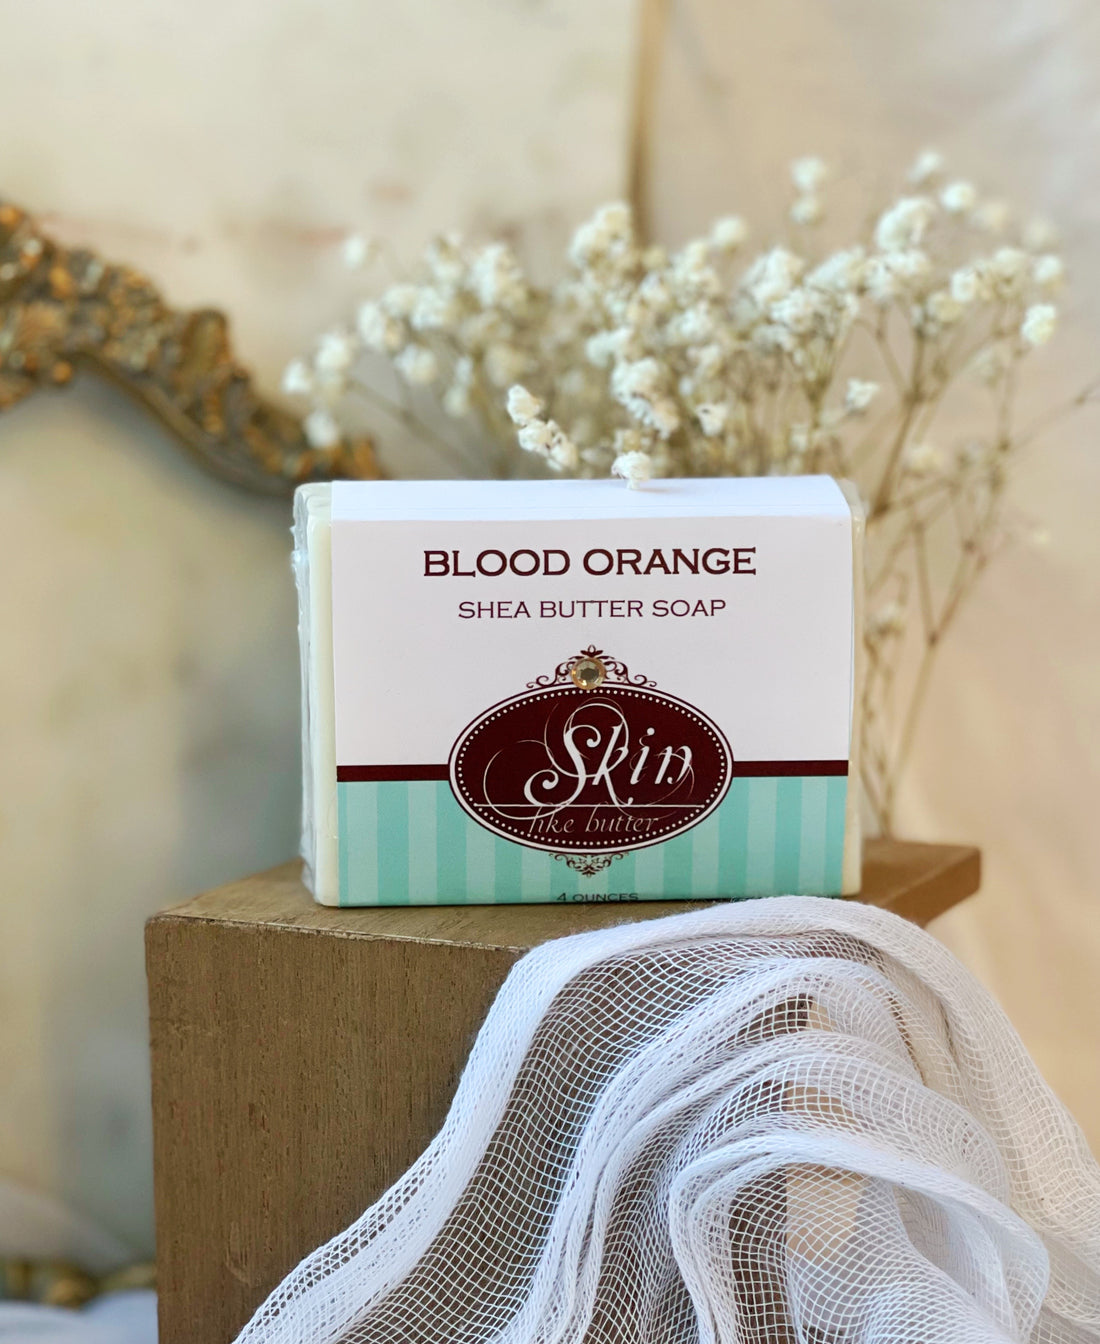 BLOOD ORANGE Skin Like Butter - Shea Butter 4 oz Soap Bar